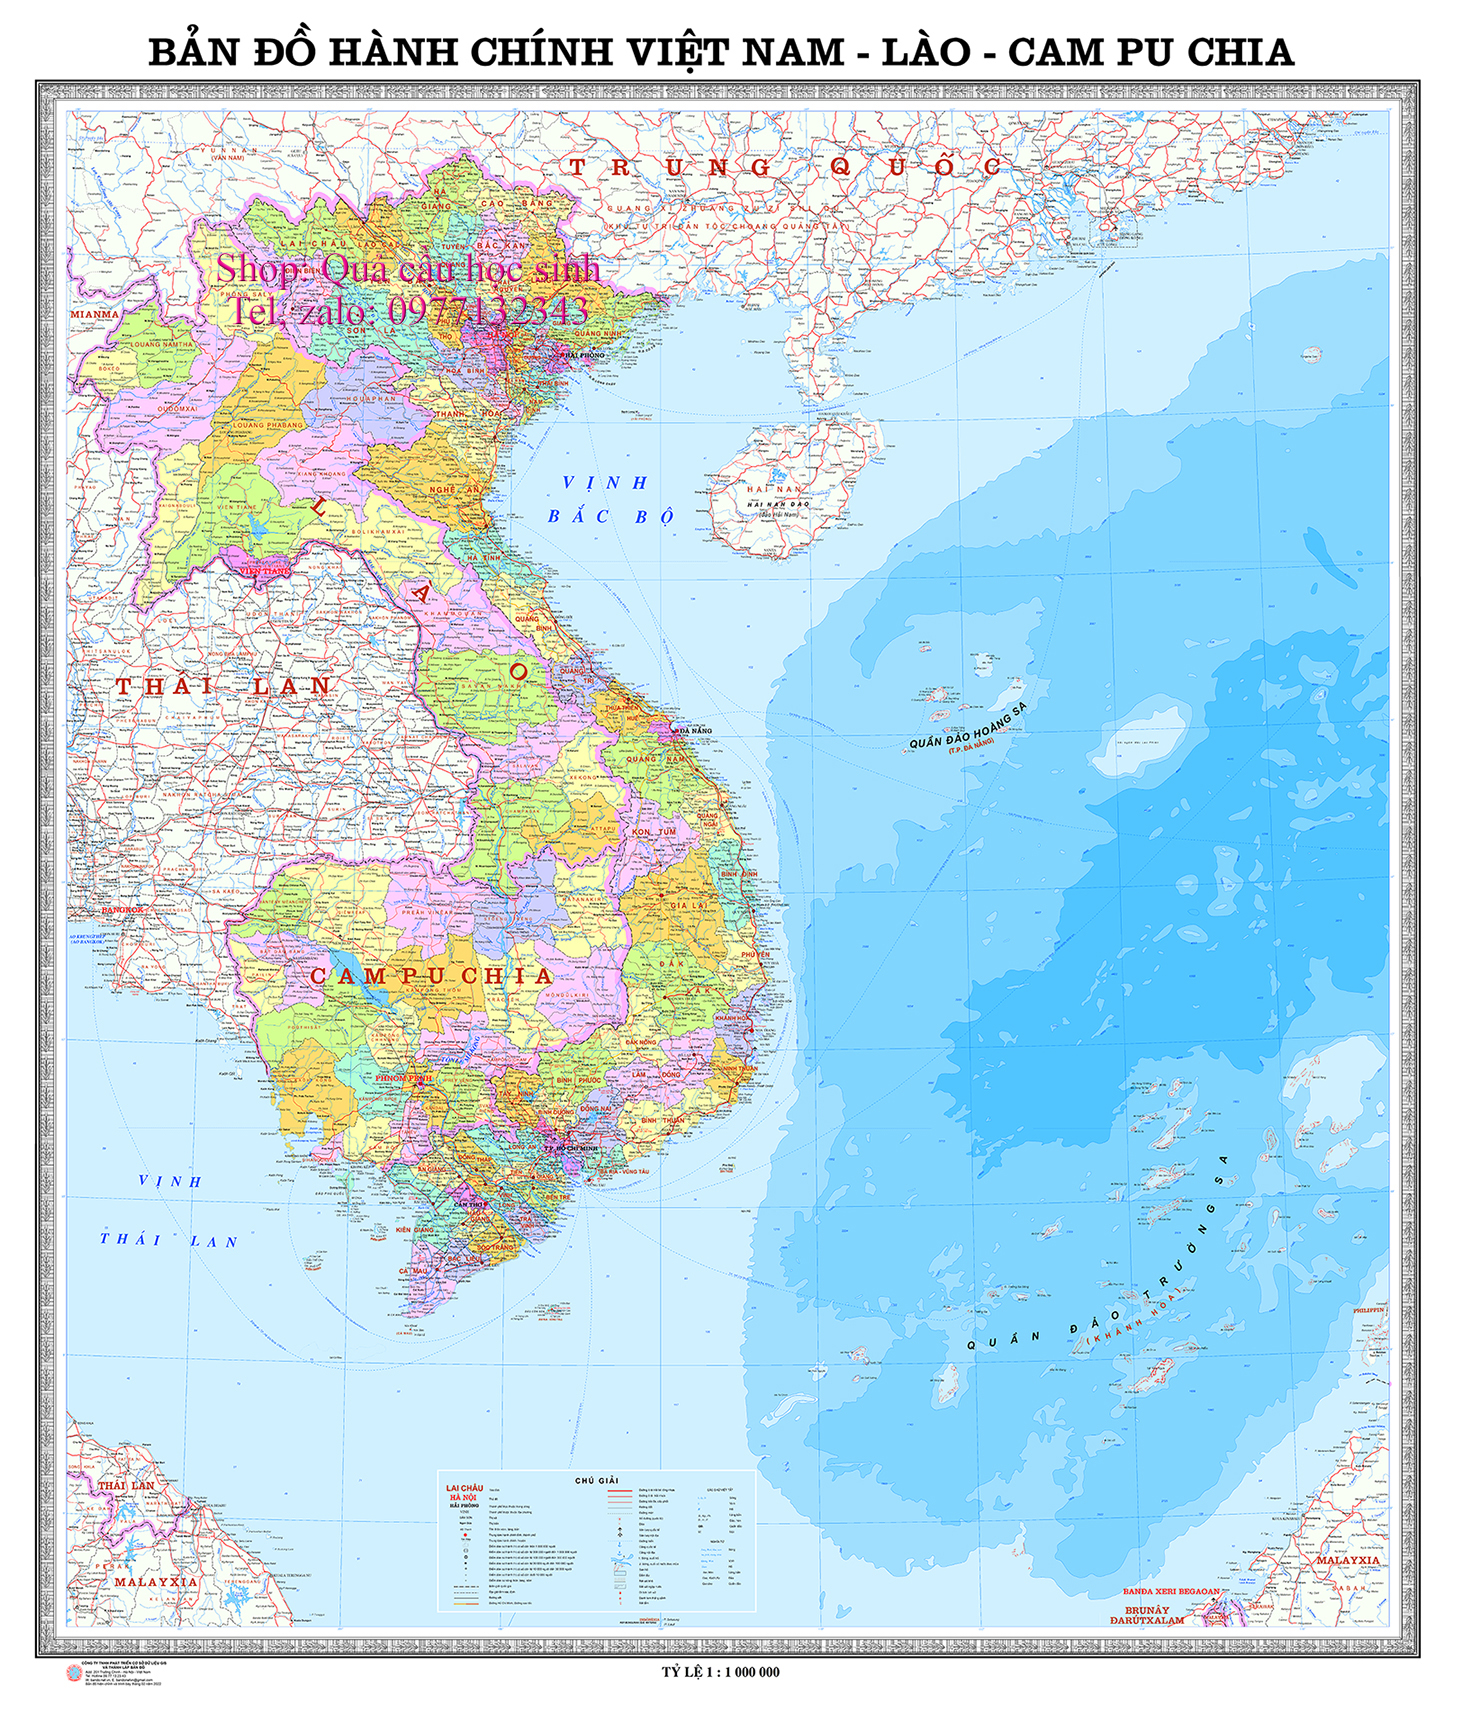 Hành chính Việt Nam-Lào-Campuchia 160x190cm